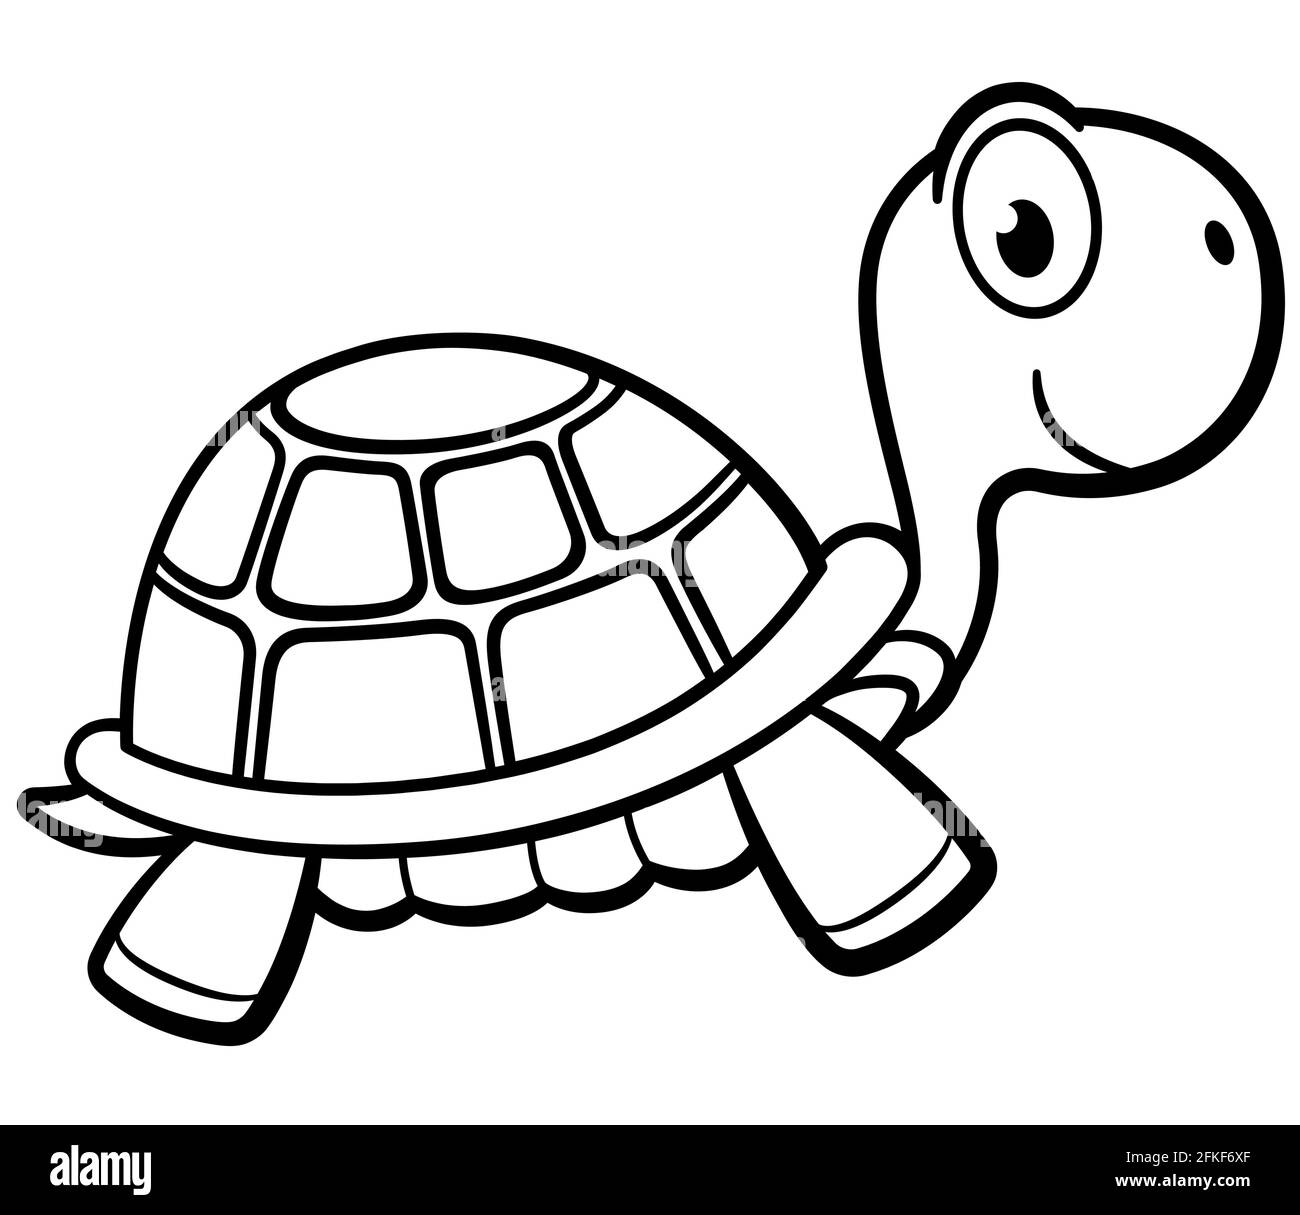 Tortuga de dibujos animados Imágenes de stock en blanco y negro - Alamy